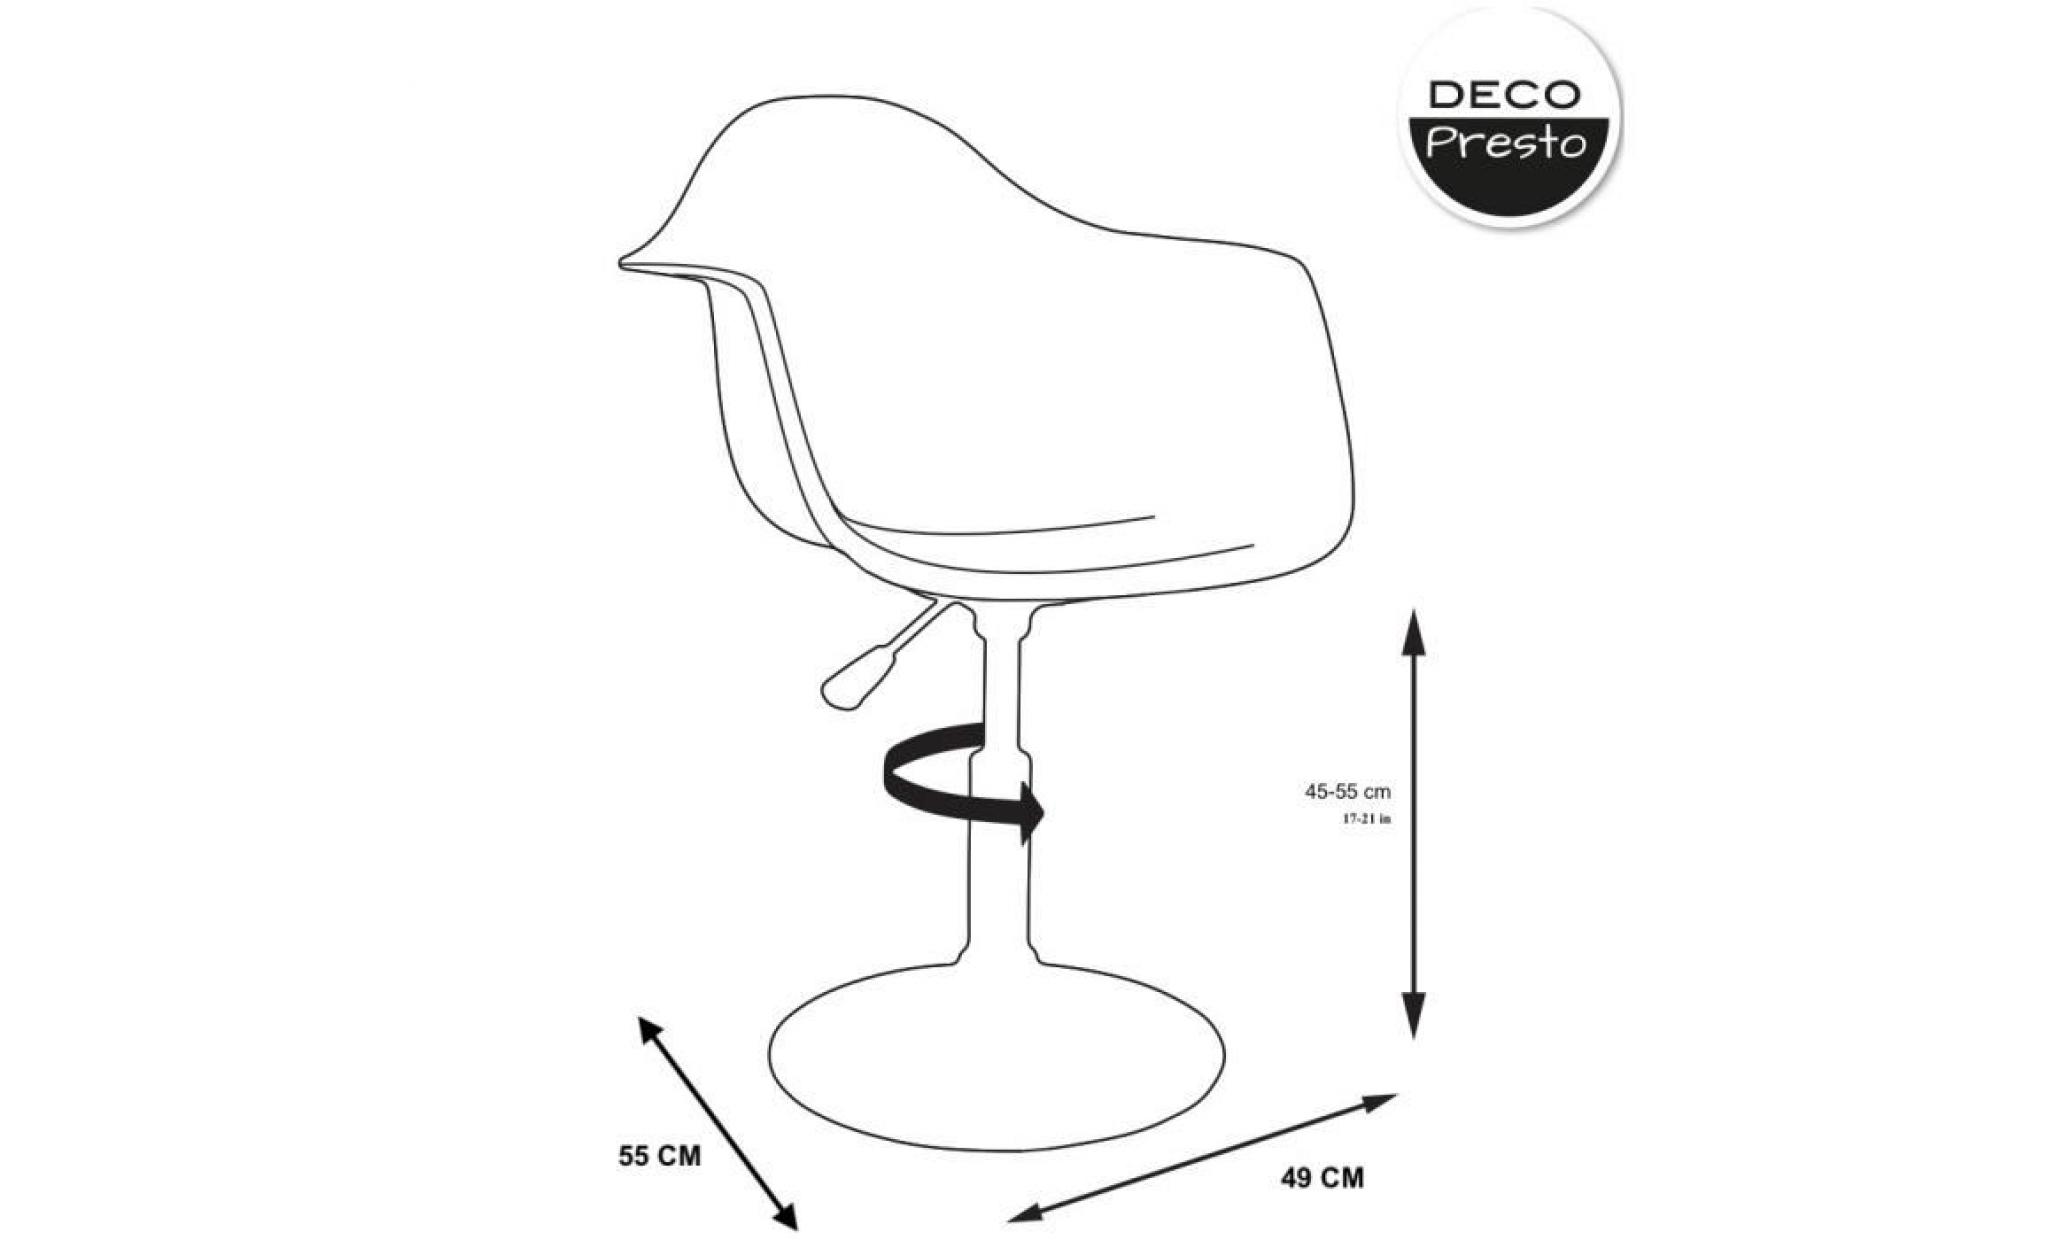 1 x fauteuil design  scandinave reglable pivotant  bordeaux pieds: acier chrome decopresto dp dai bx 1 pas cher